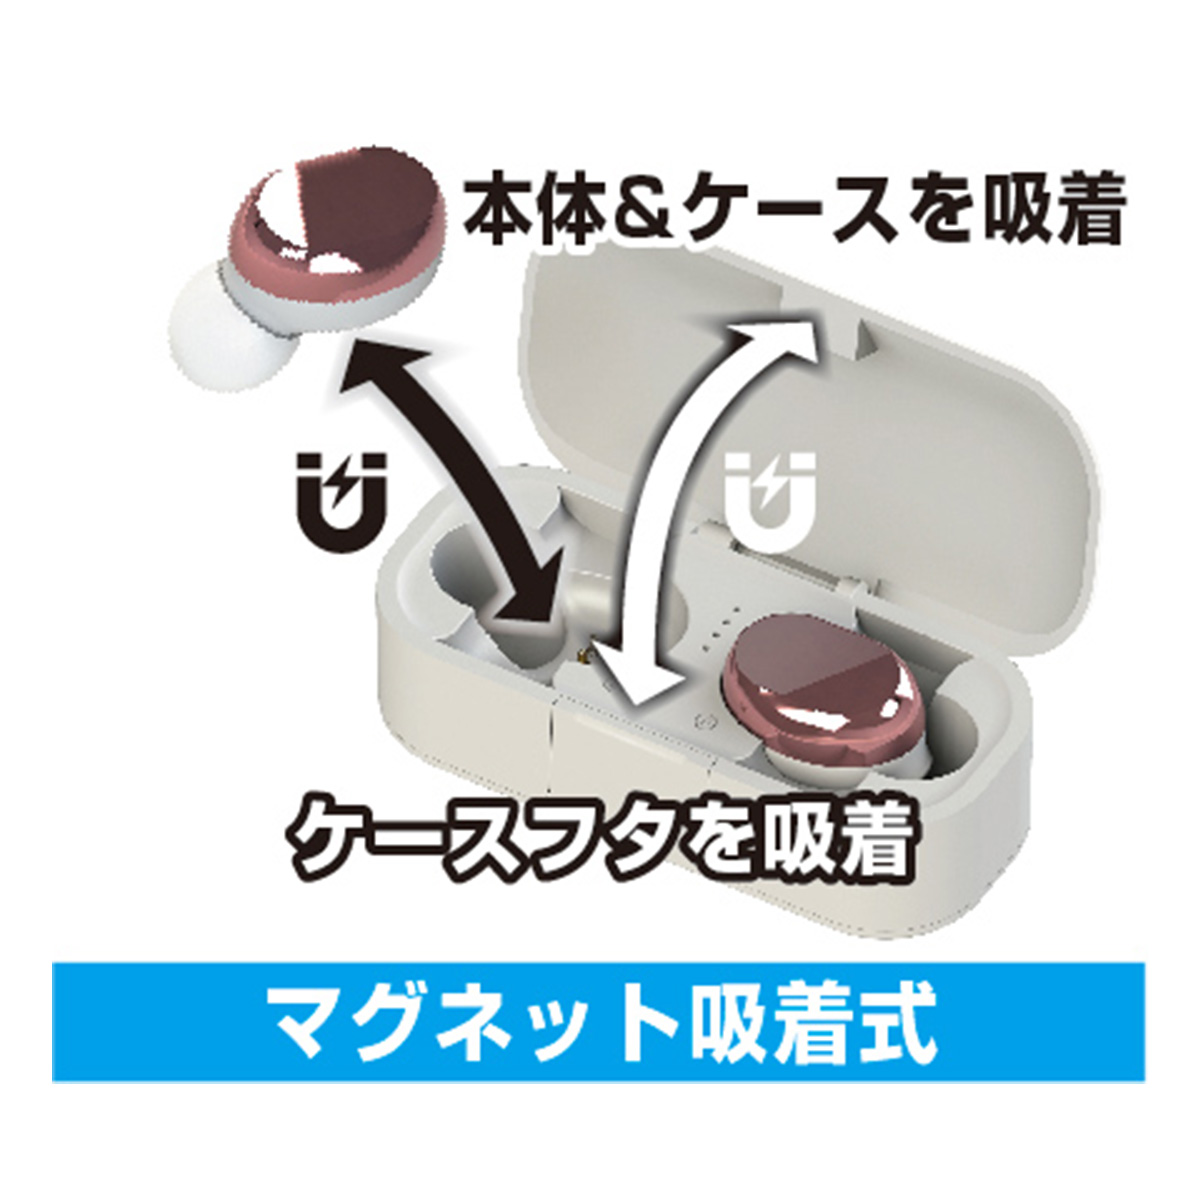 【カシムラ】完全ワイヤレスステレオイヤホン2 充電ケース付